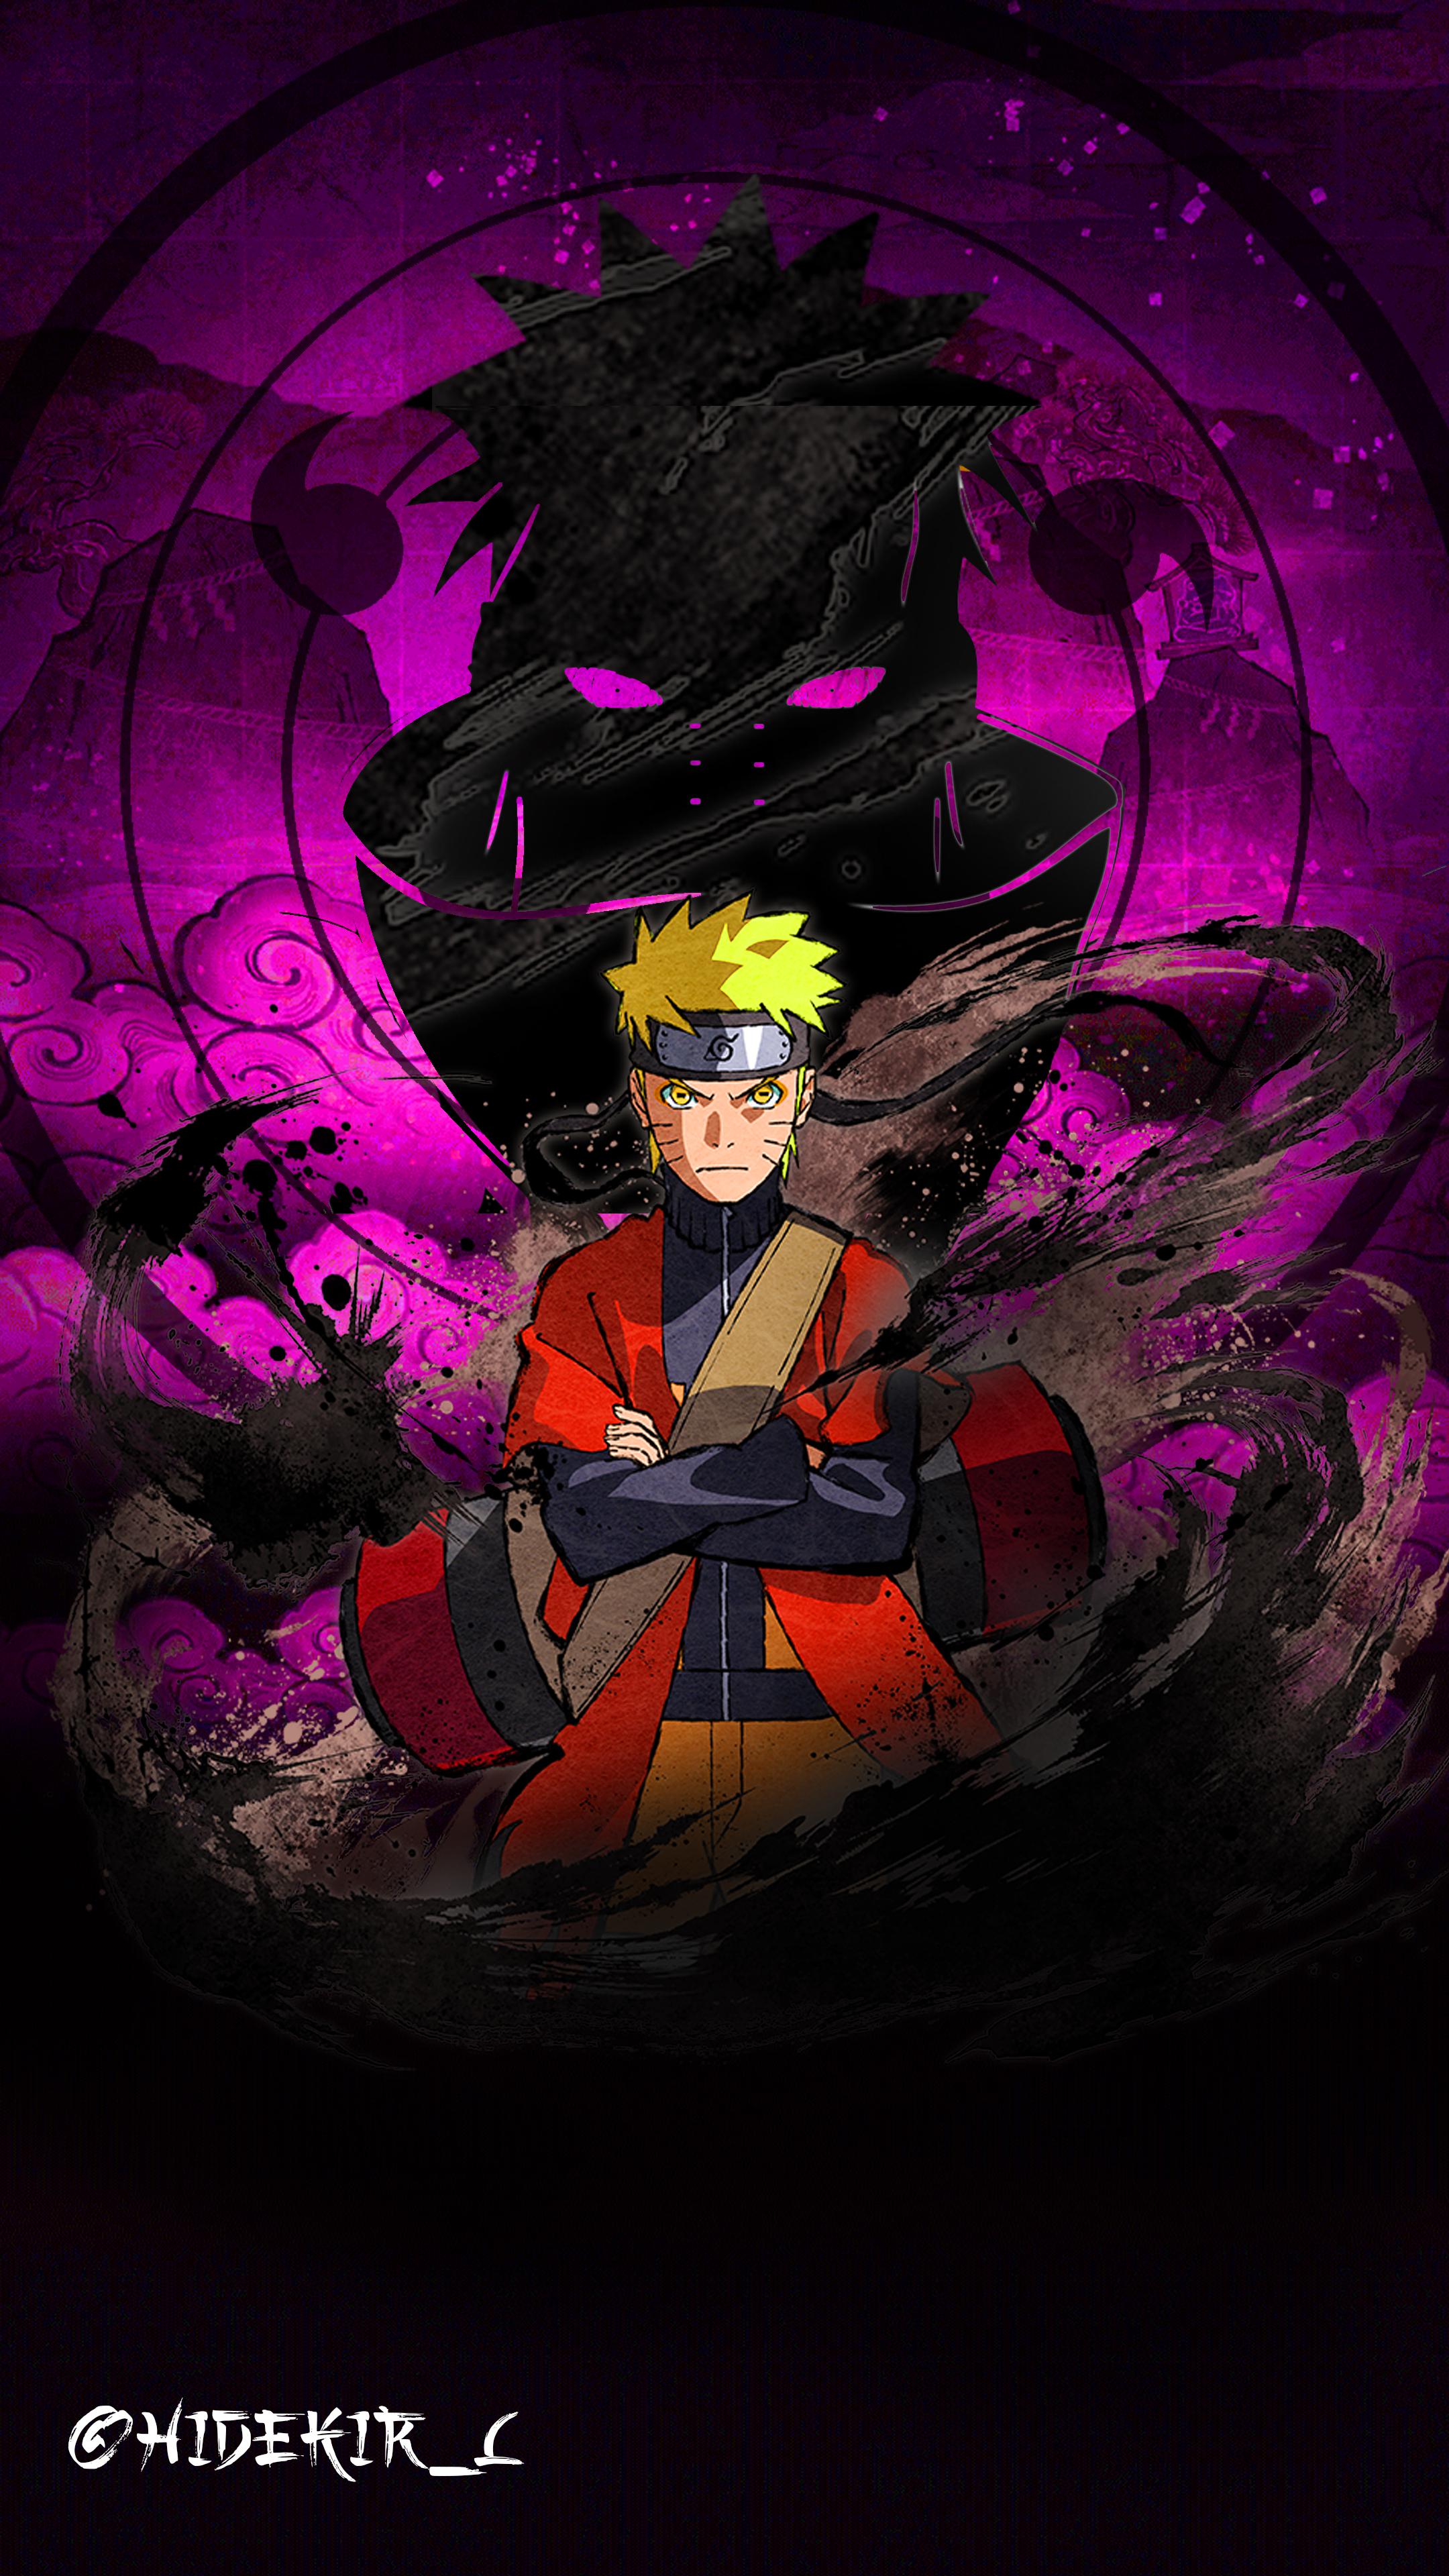 Gambar Naruto Keren Untuk Wallpaper gambar ke 1